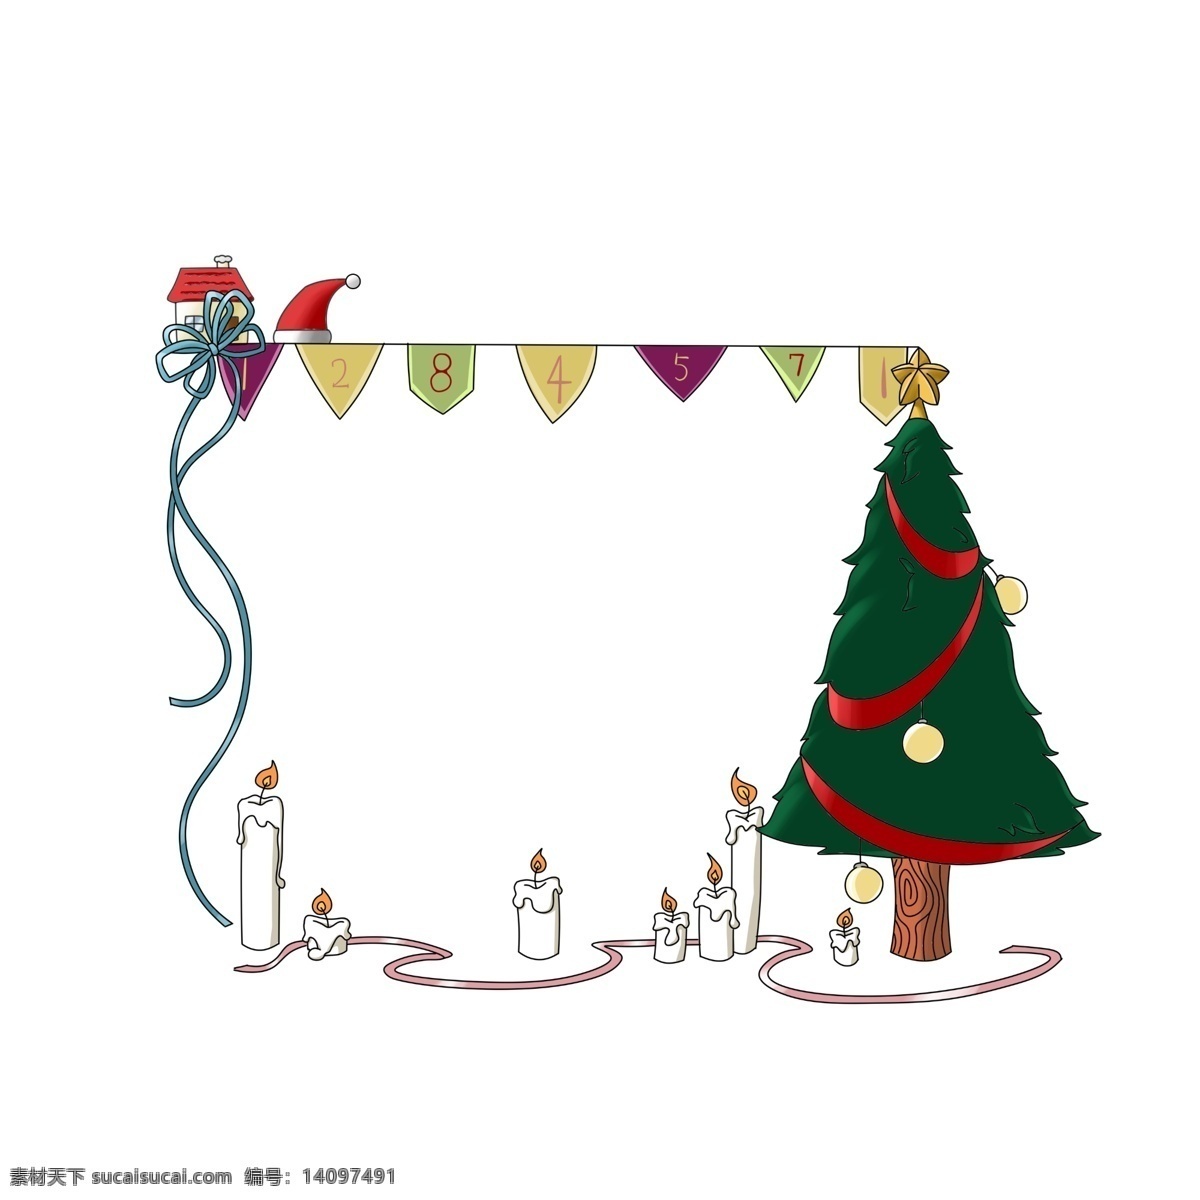 卡通 手绘 圣诞节 帽子 装饰 框 圣诞节装饰框 圣诞 商品展示 边框 文本框 手绘边框 圣诞树 圣诞铃铛 植物框 圣诞帽子